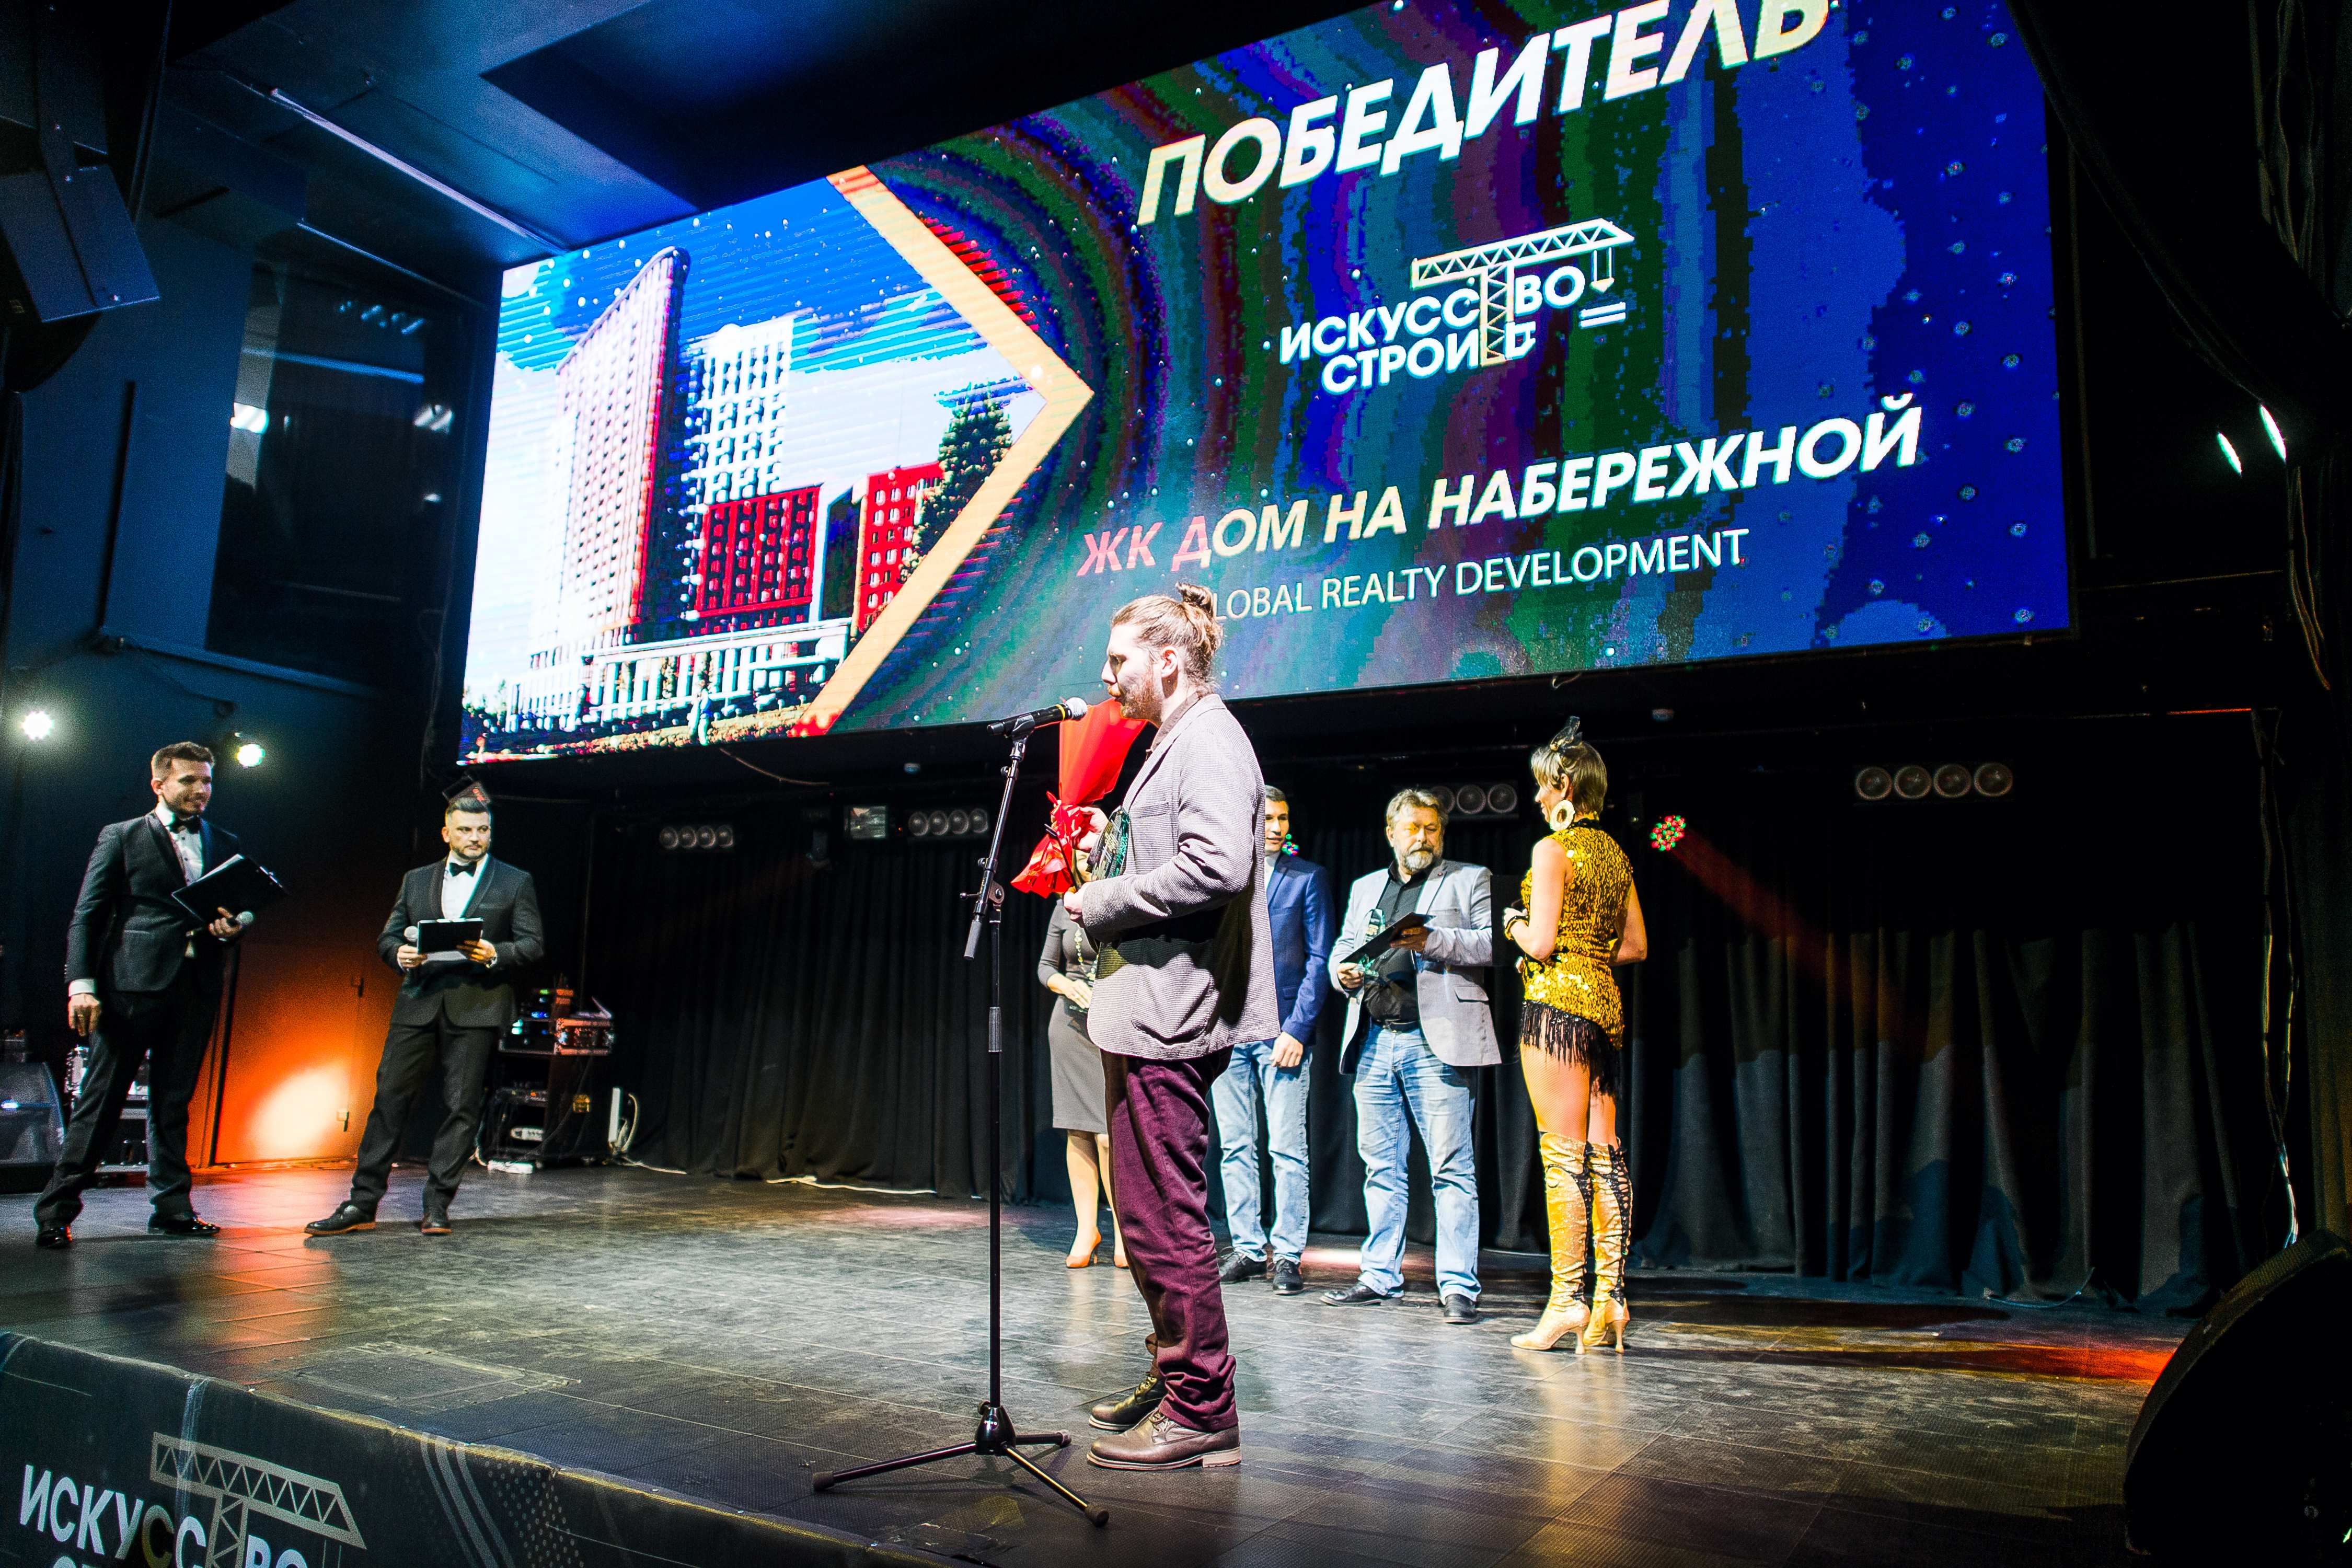 «Дом на Набережной» стал ЖК года с лучшей архитектурой в Нижнем Новгороде - фото 1